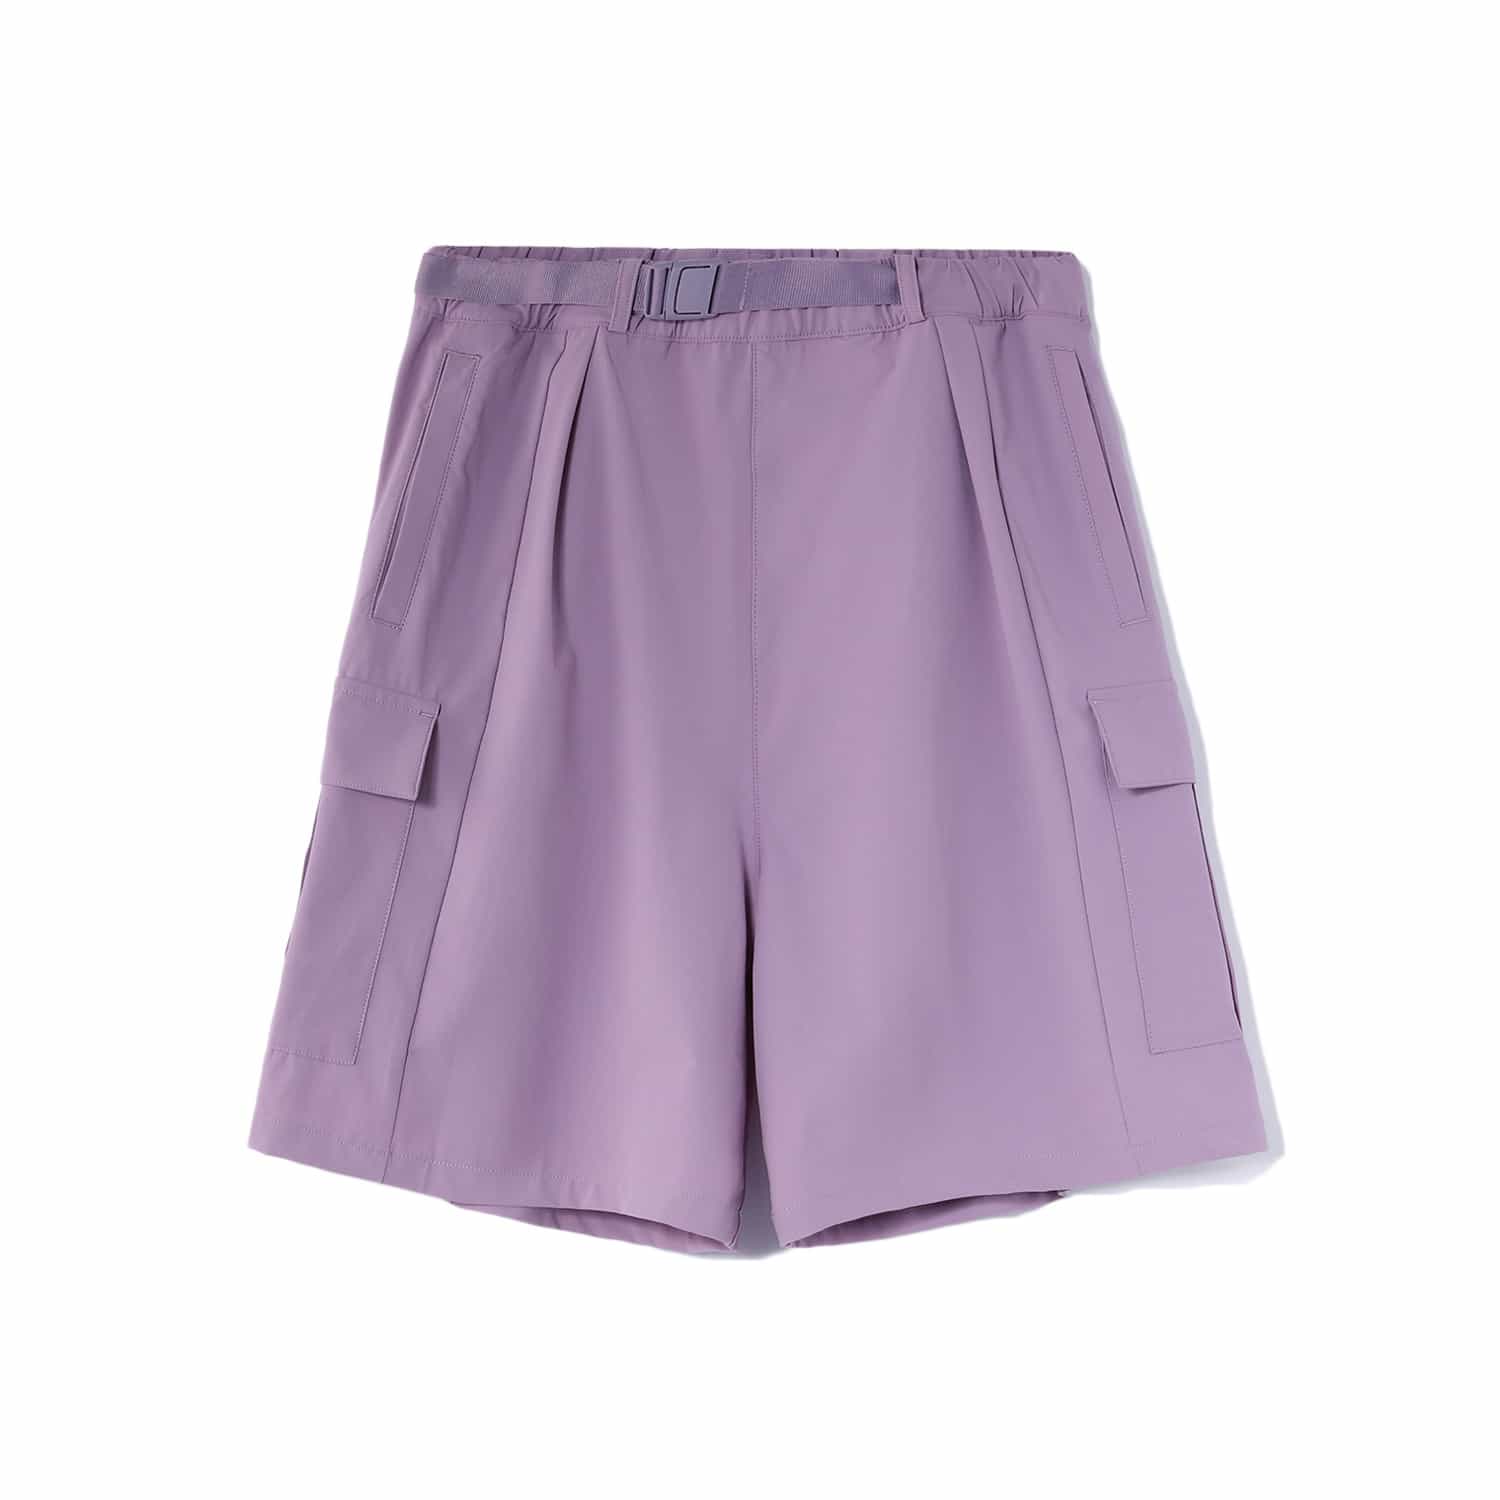 反伍系列女子潮流休閒短褲 - 月光紫